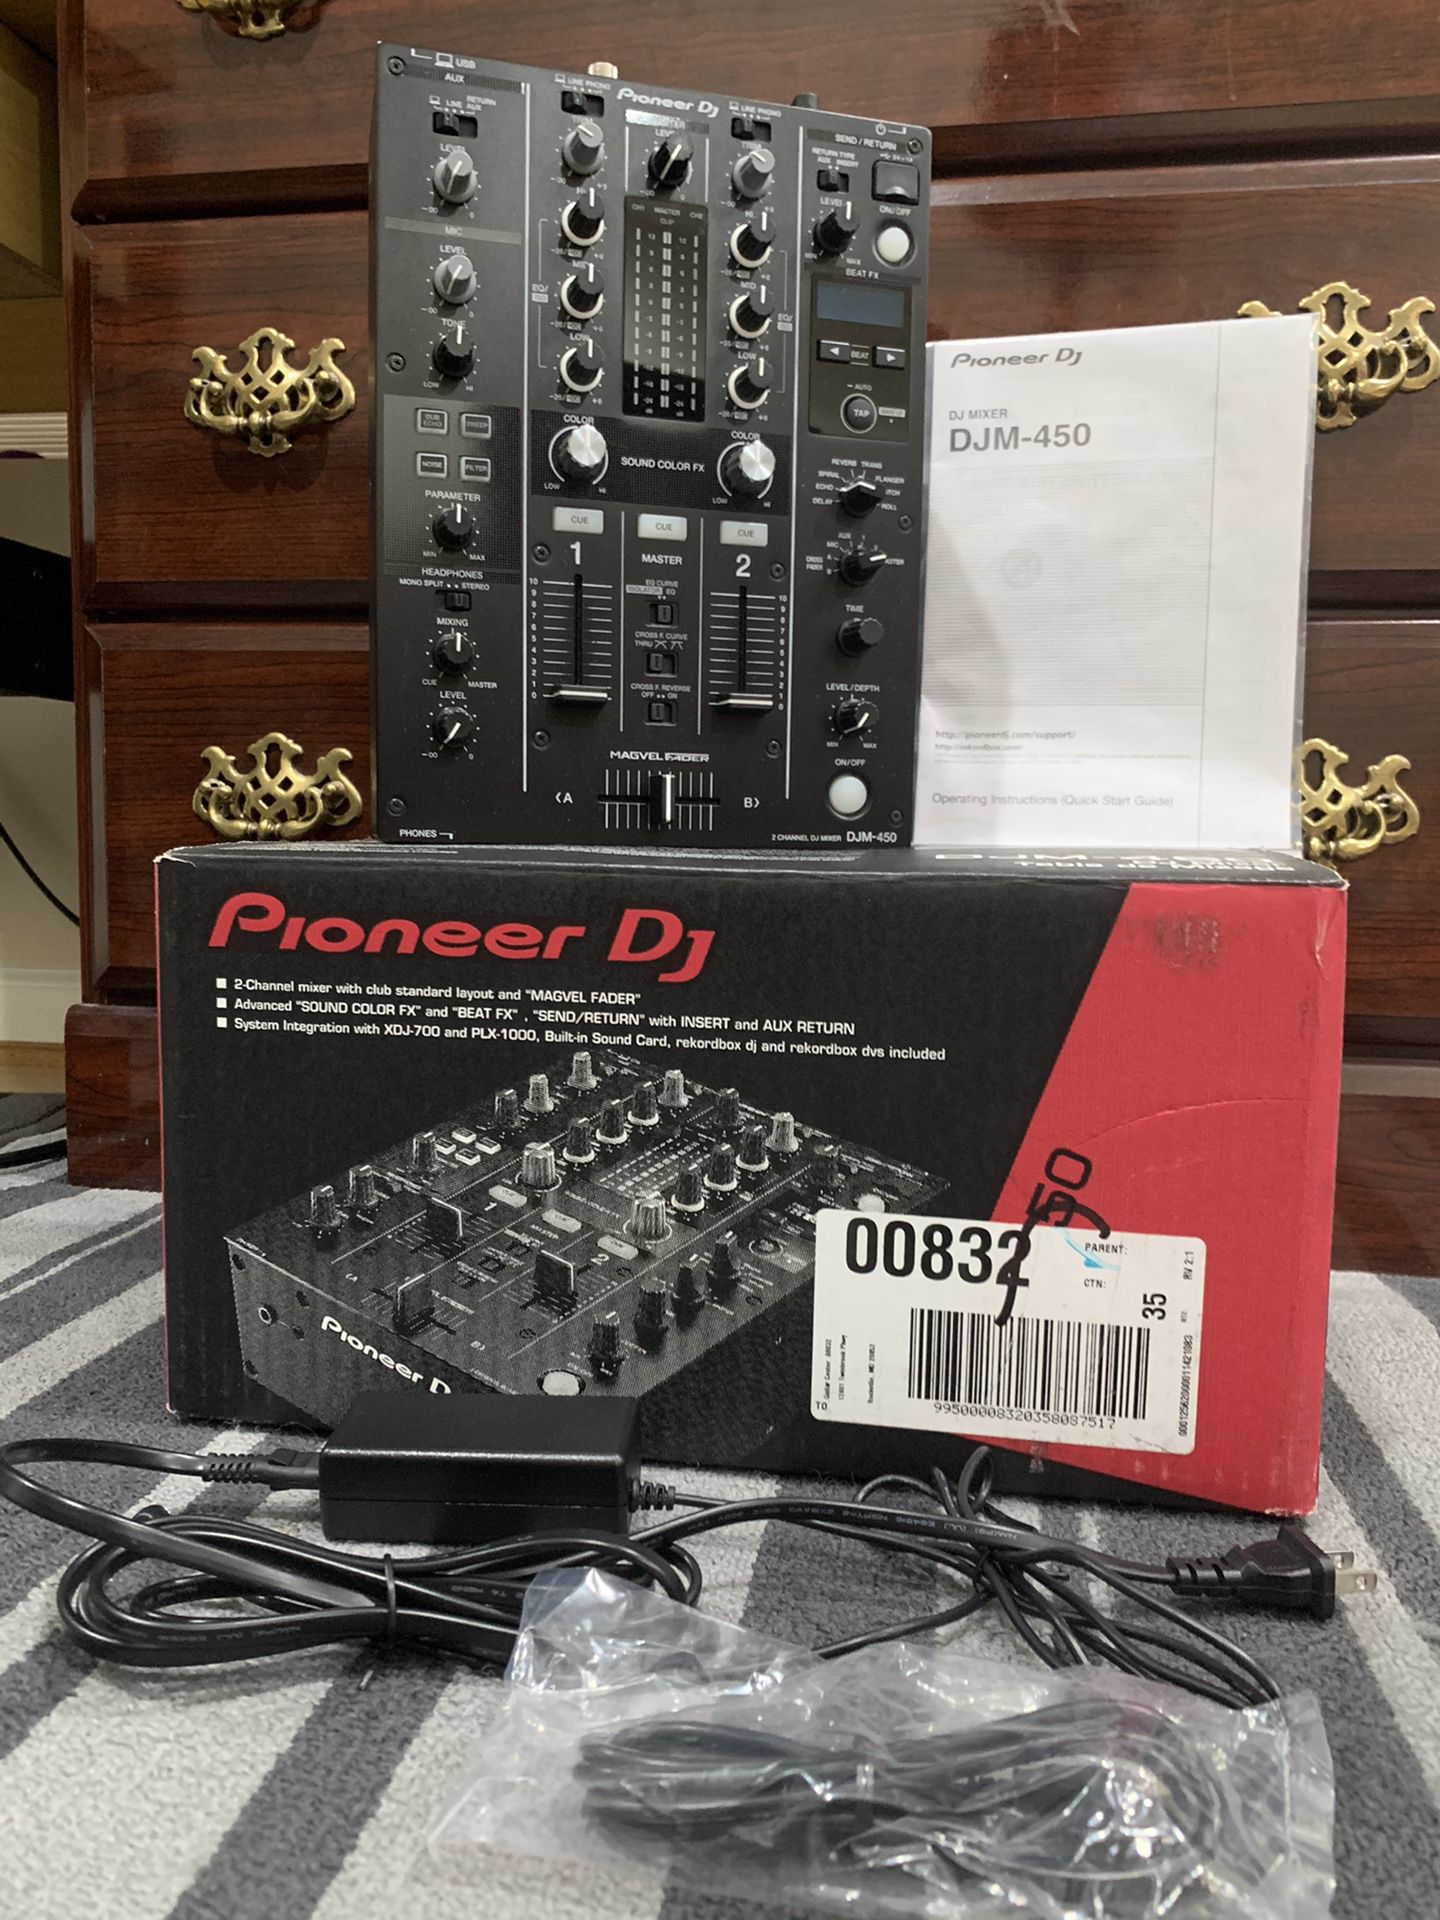 Pioneer DJM-450 Mixer